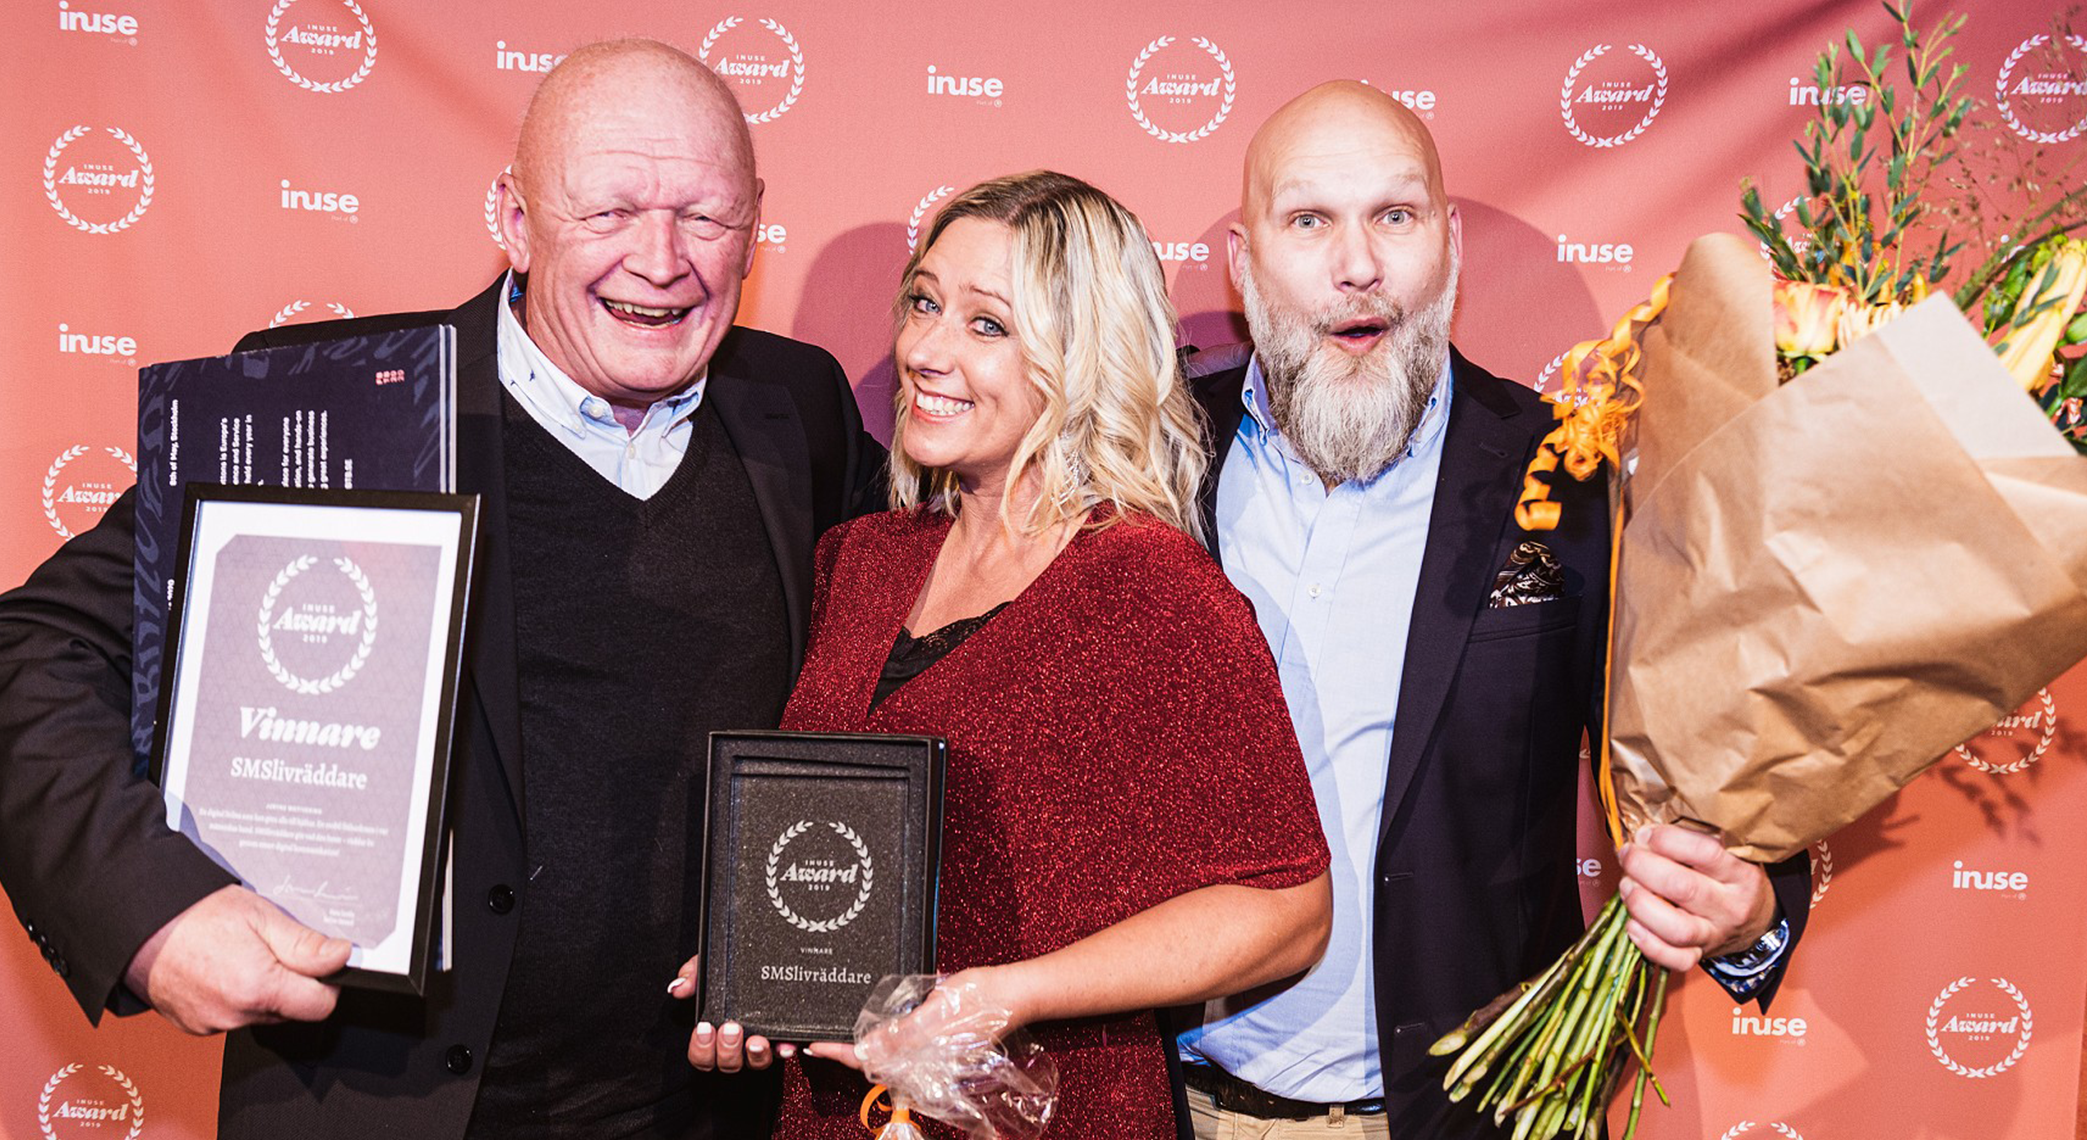 SMSLivräddare korad vinnare av inUse Award 2019